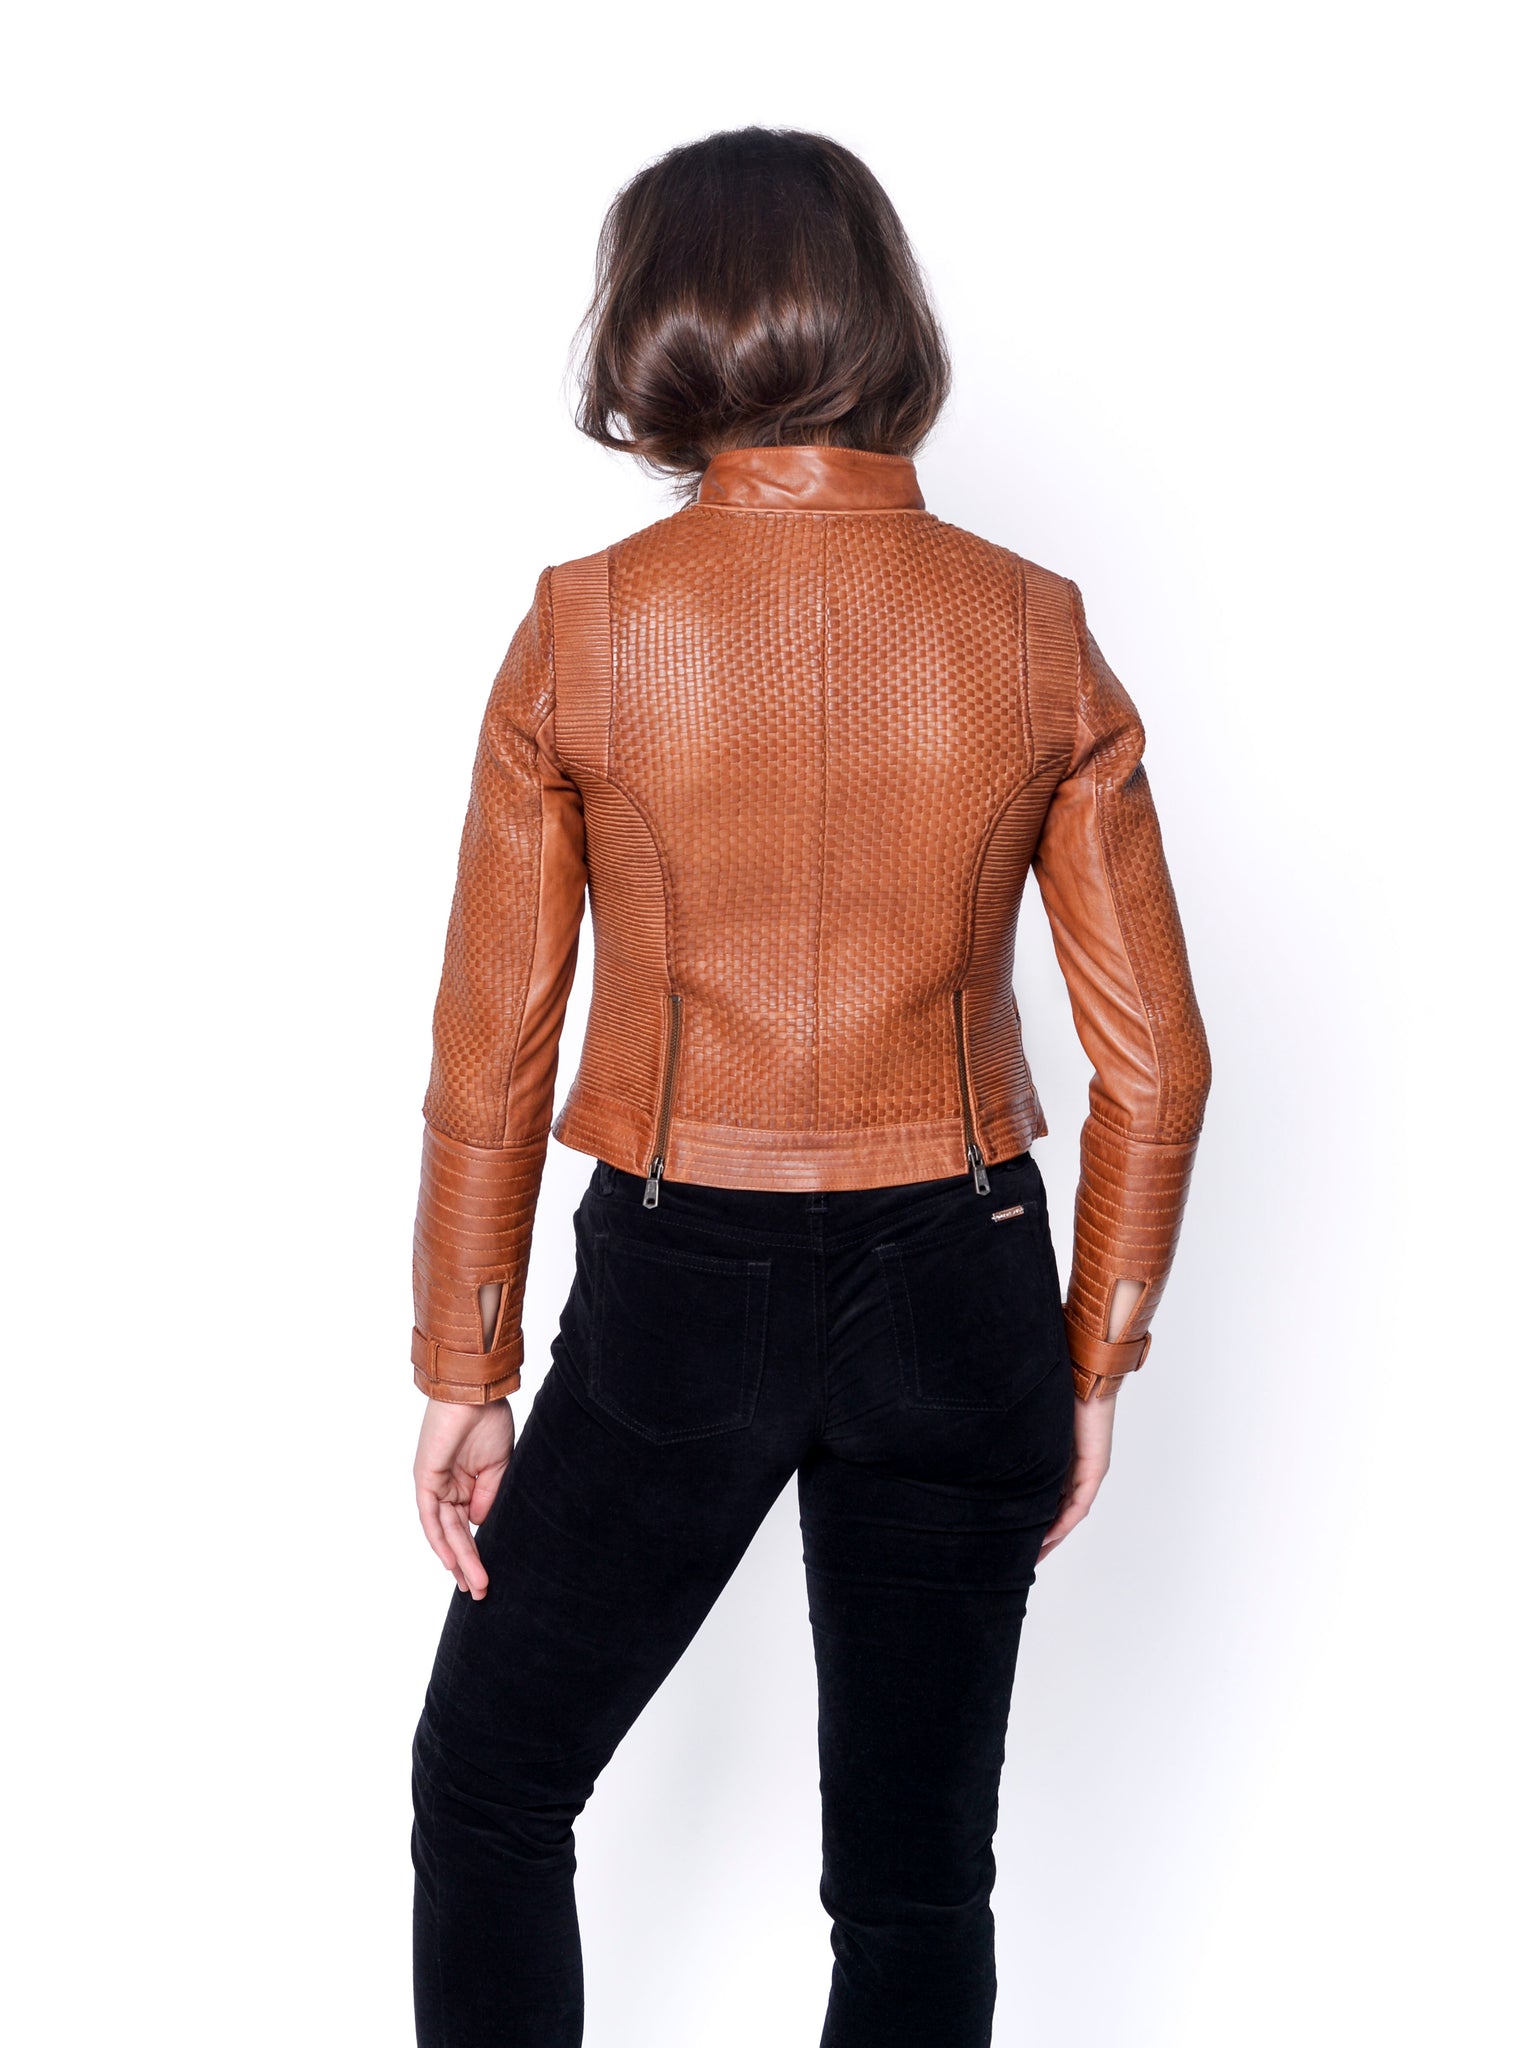 Zoe Hand Woven Leather Jacket